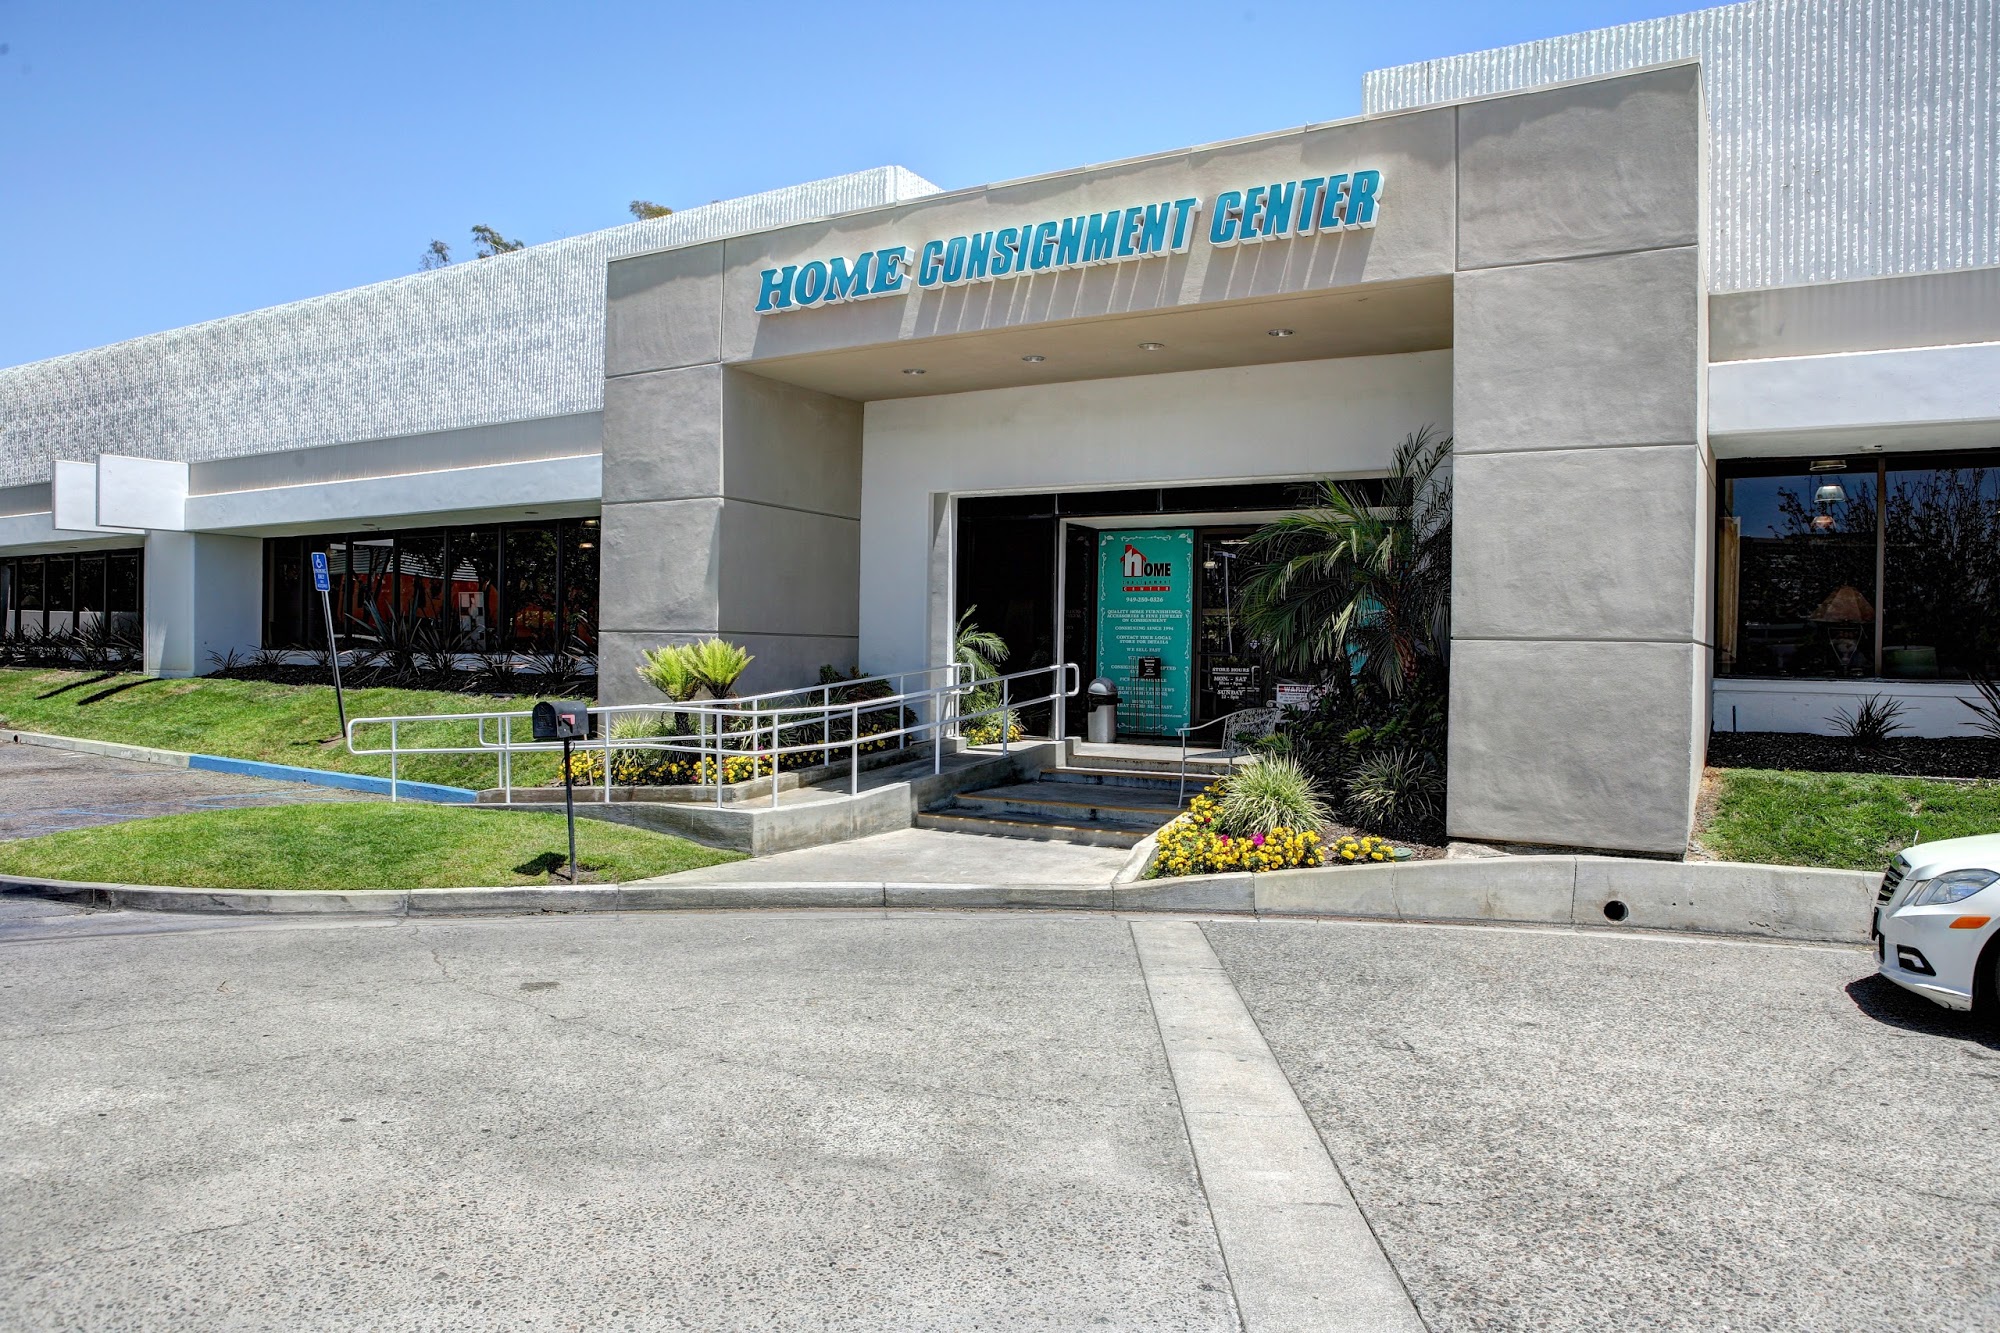 Home Consignment Center - Newport/Irvine